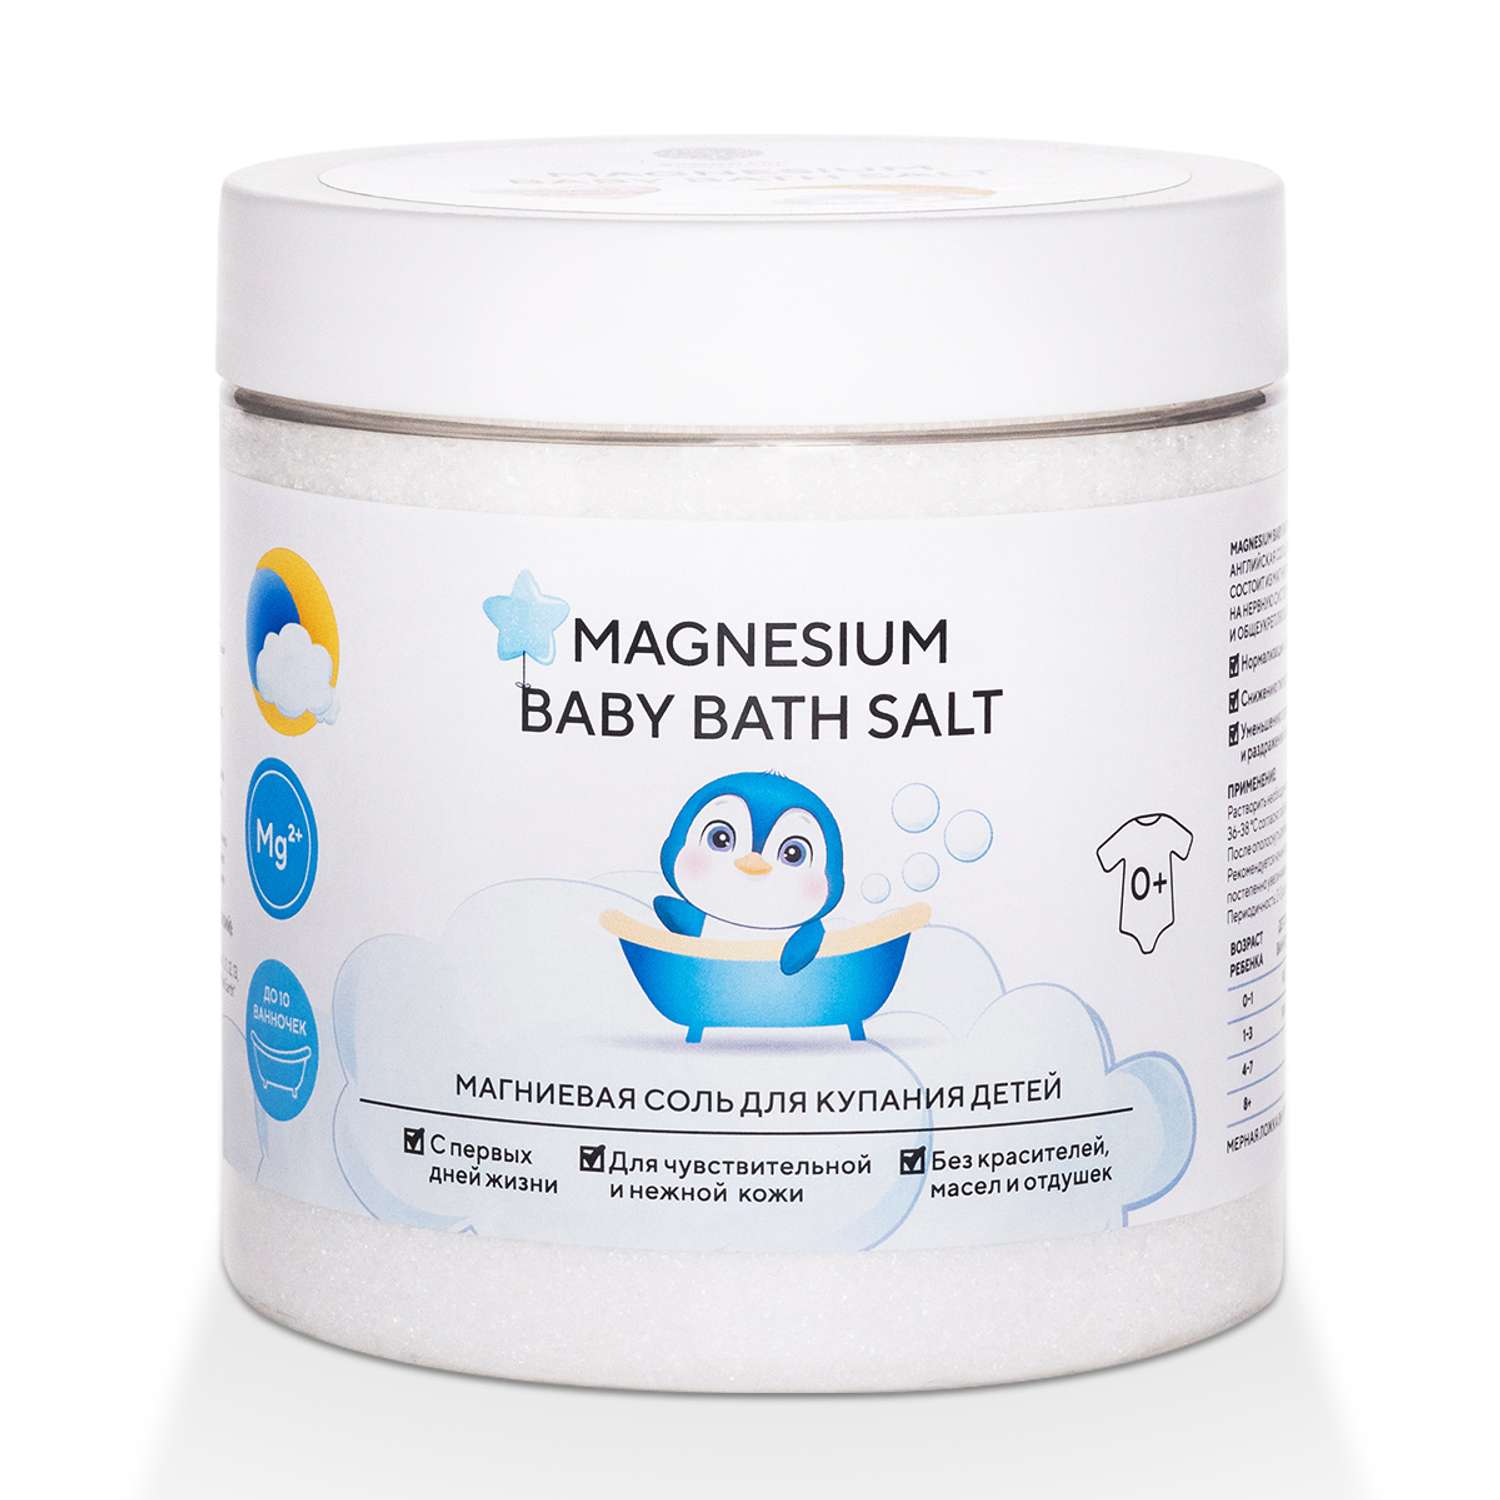 Соль для ванны детская Salt of the Earth для купания Magnesium Baby Bath Salt 500 г - фото 1